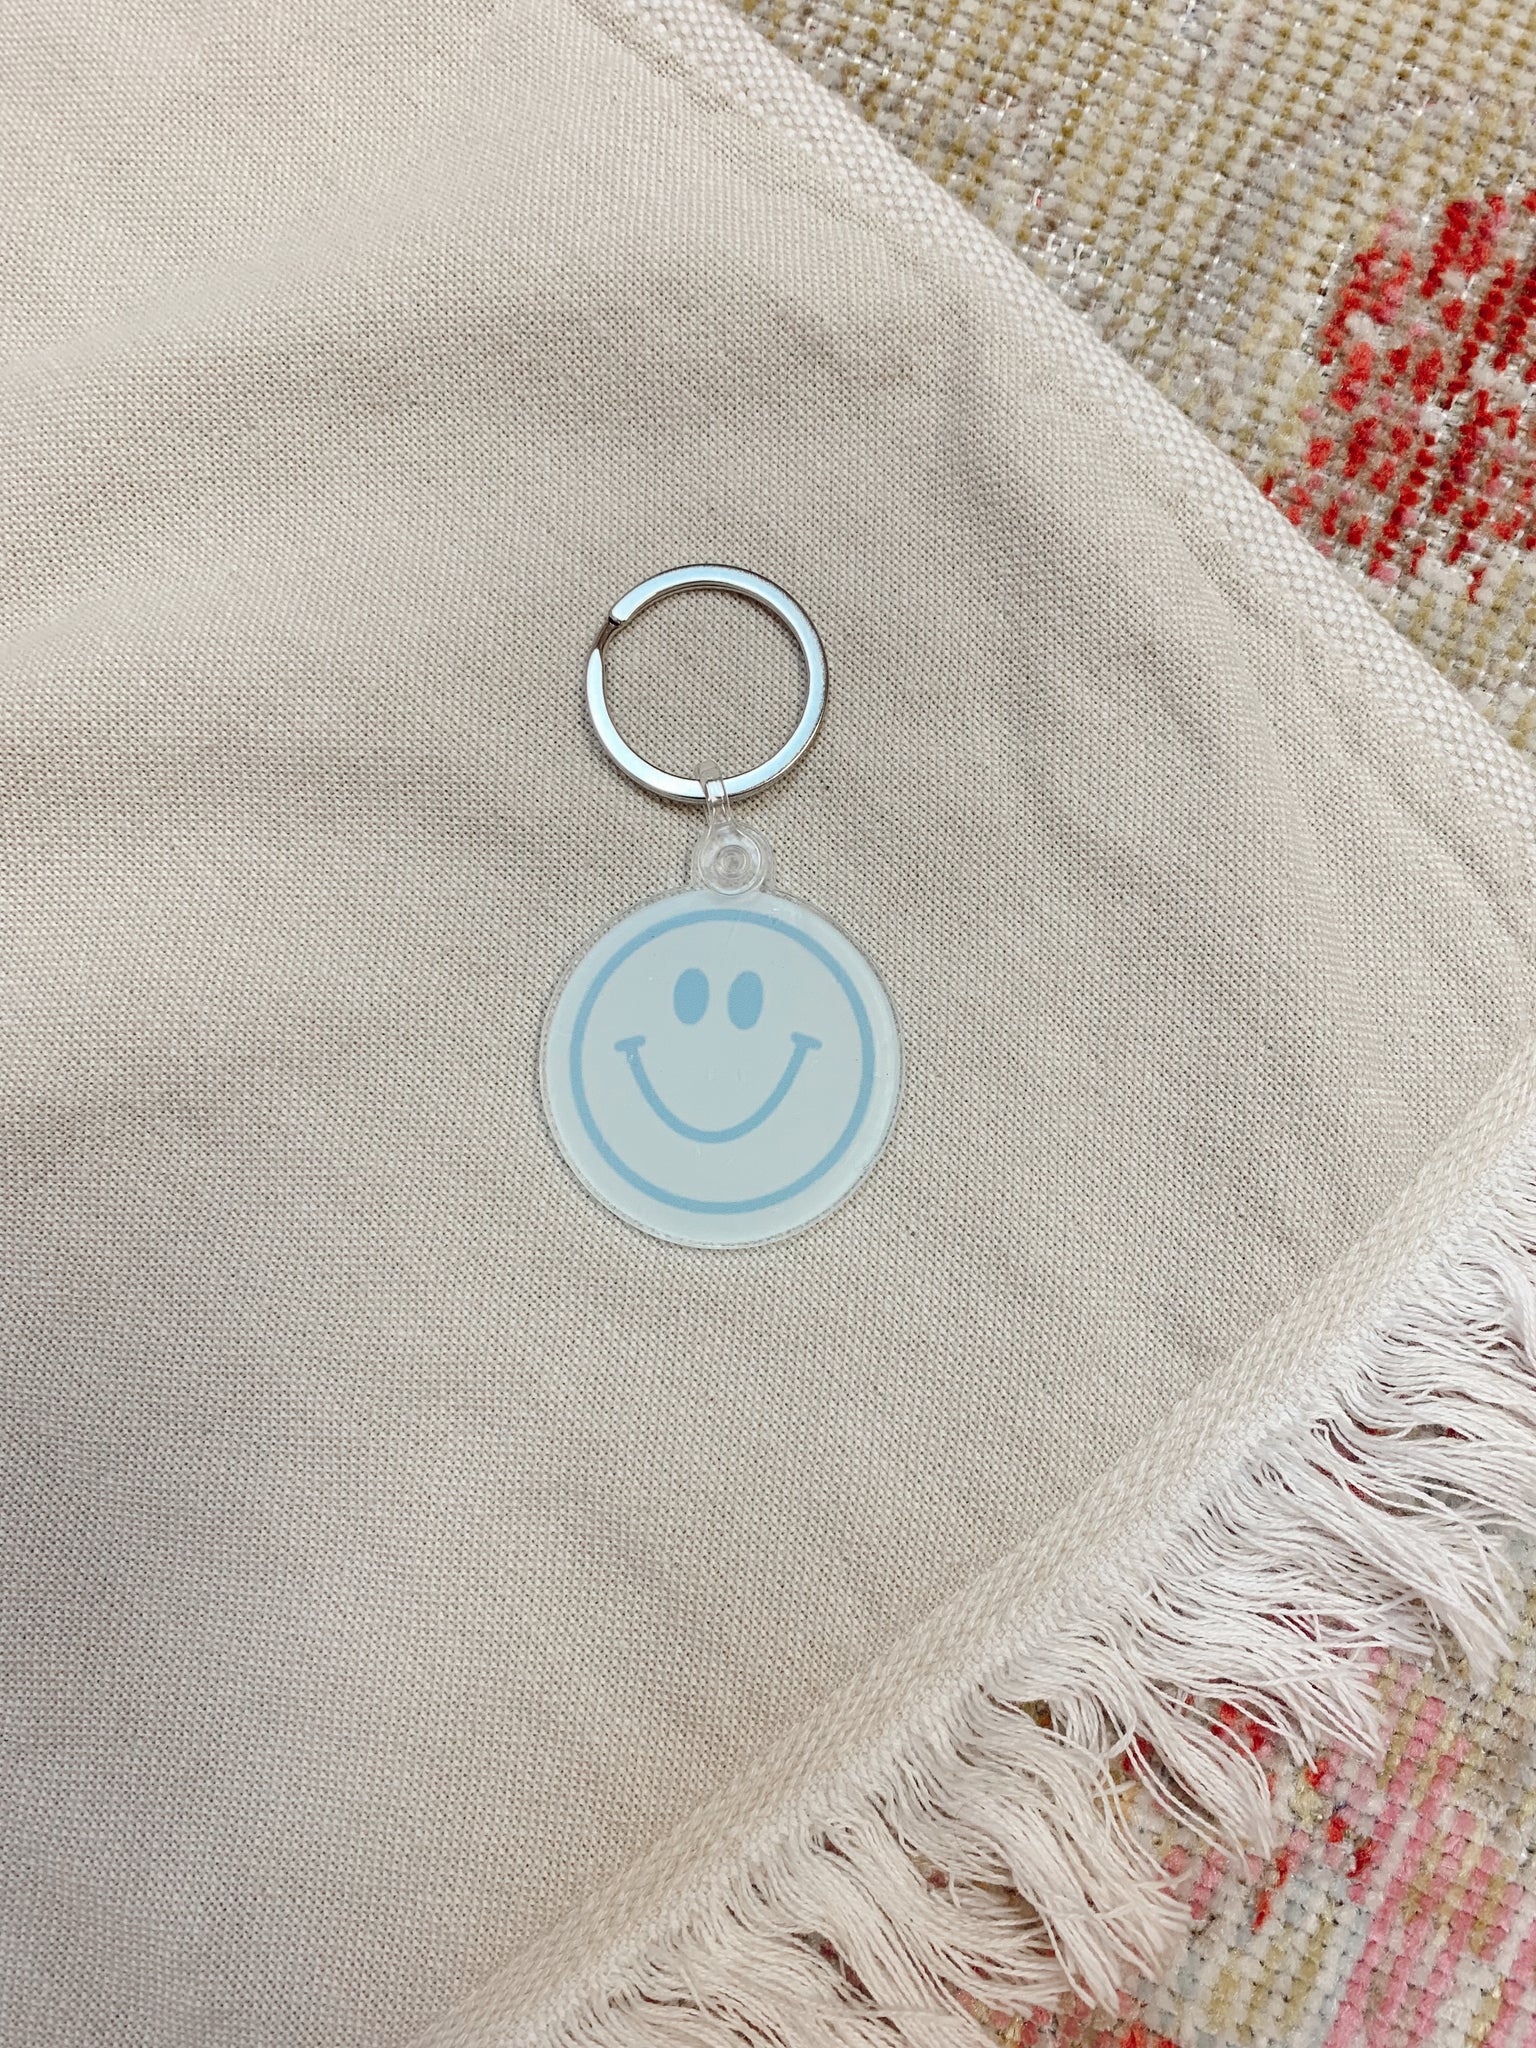 Blue Smiley Face Acrylic Keychain